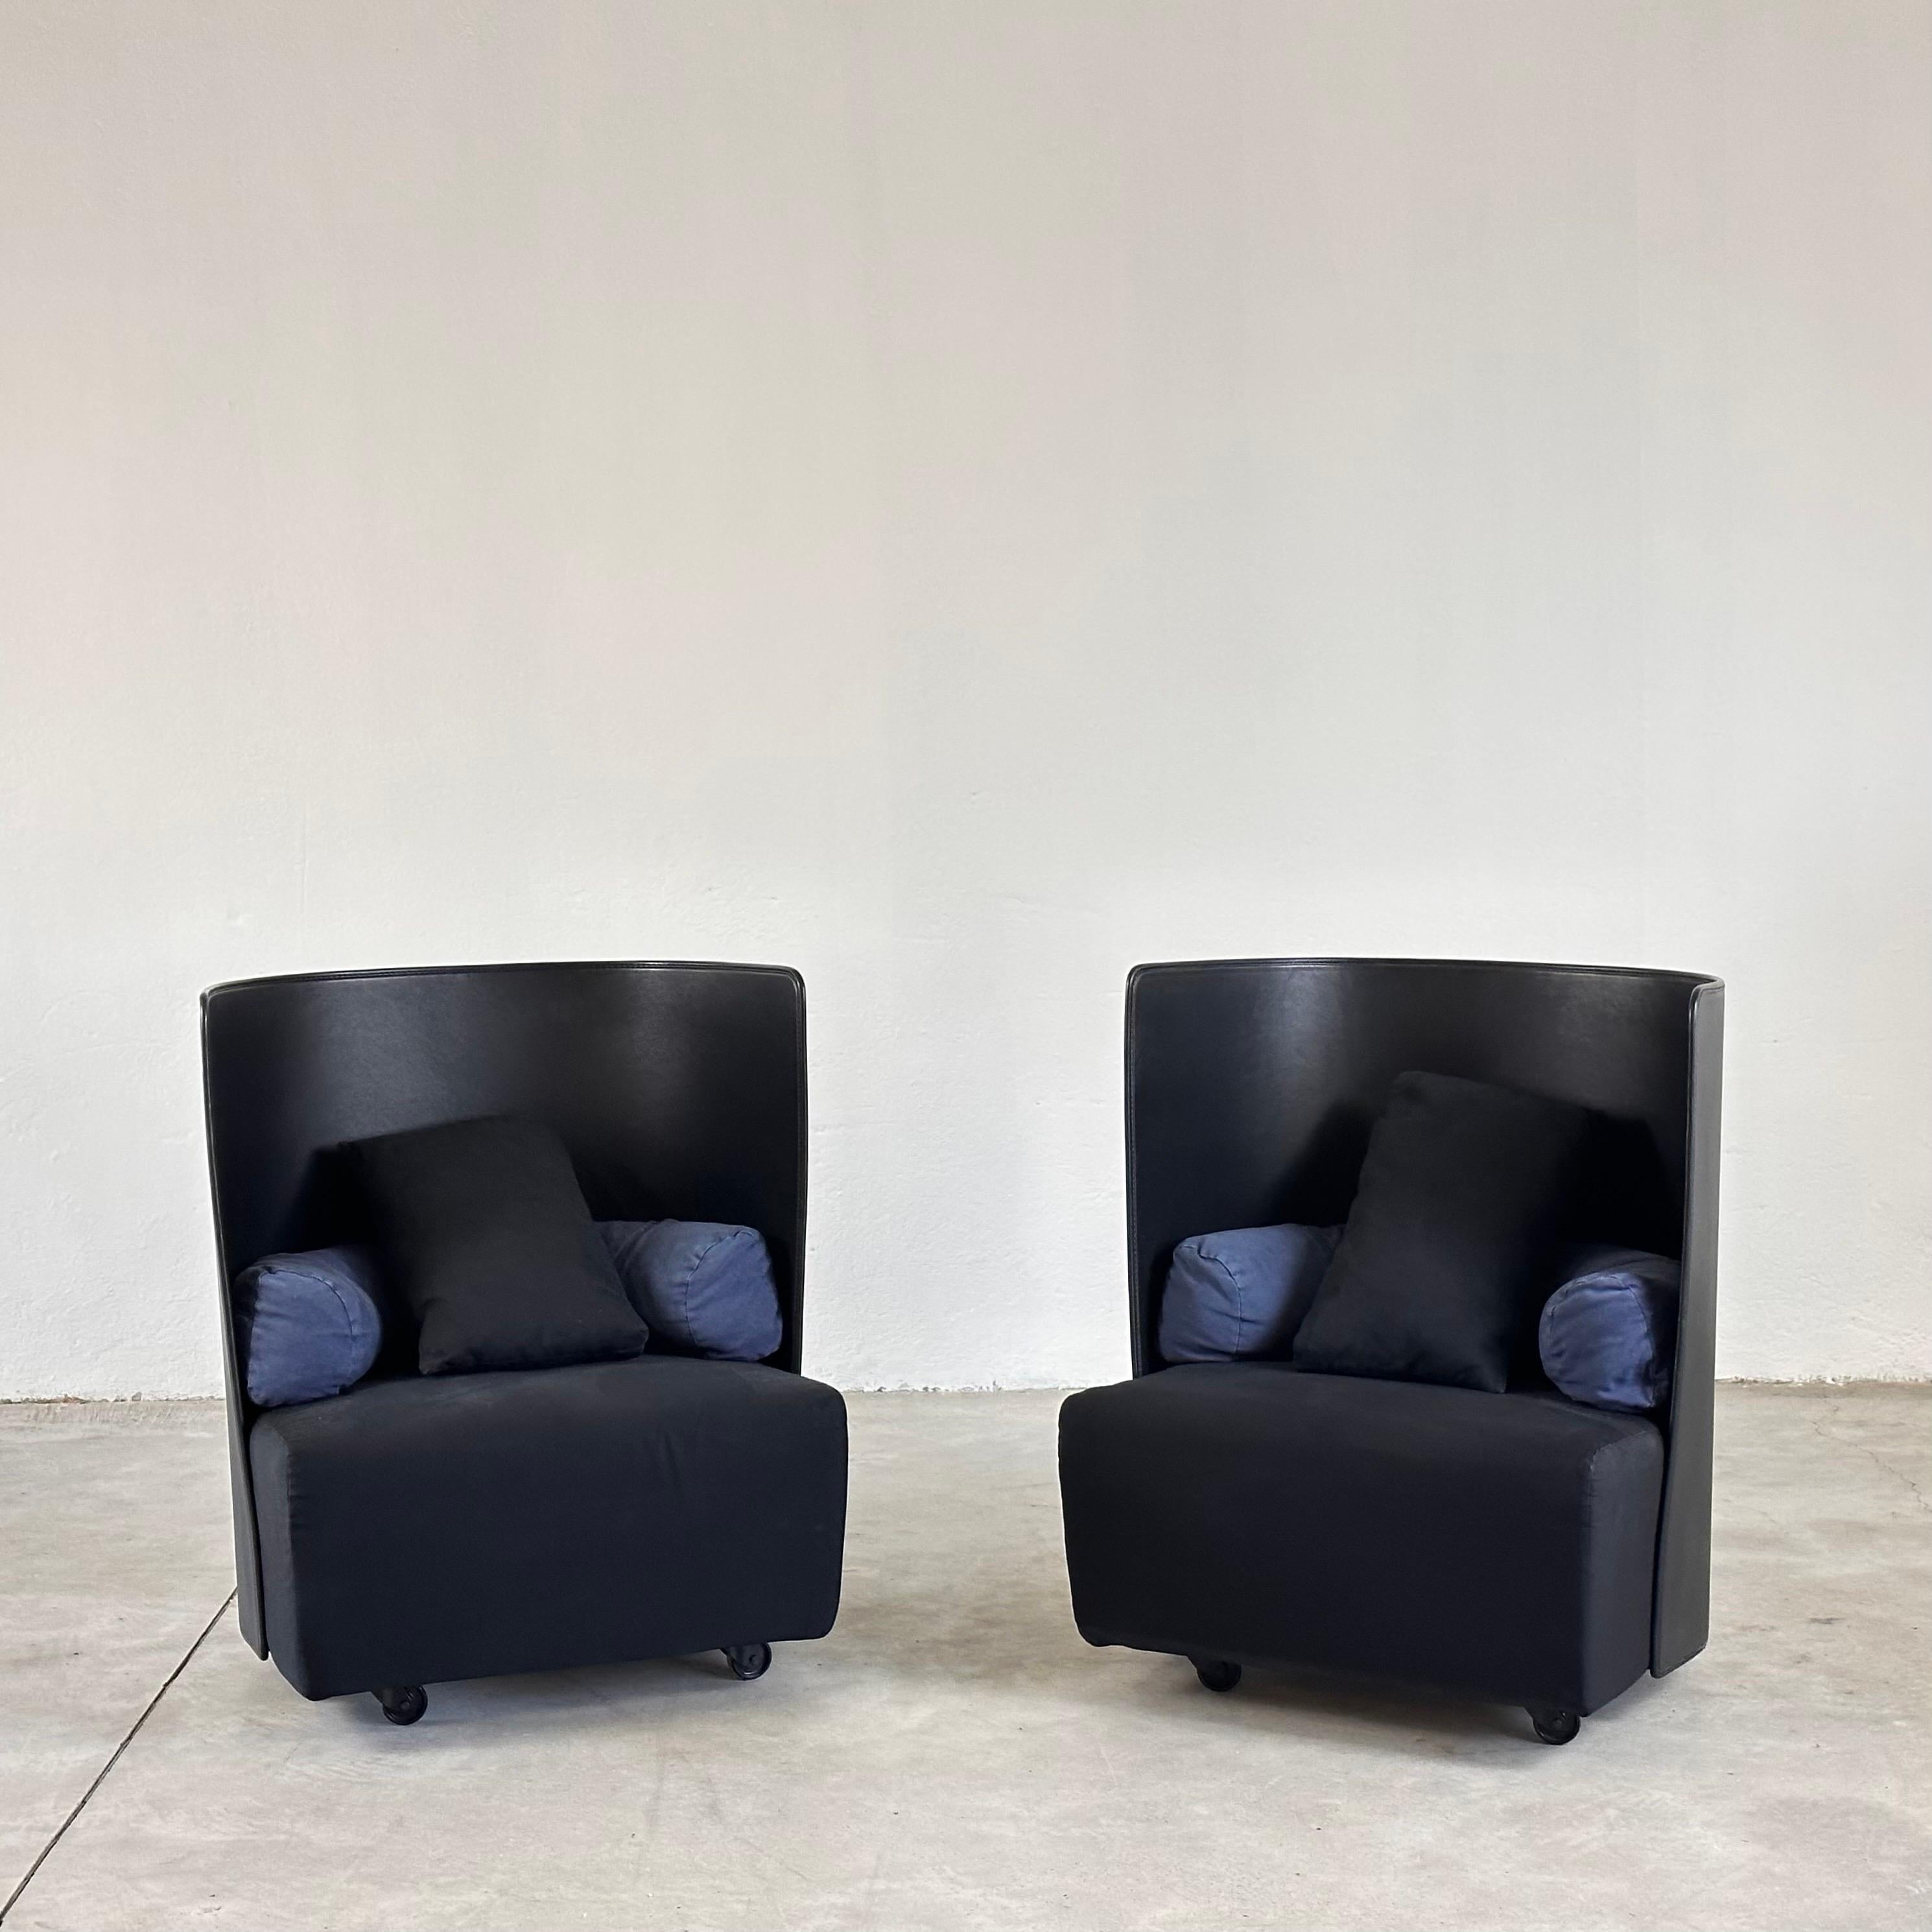 Paar 'Campo' Sessel von De Pas, Urbino, Lomazzi für Zanotta, 1980er Jahre

Dieses Set aus zwei 